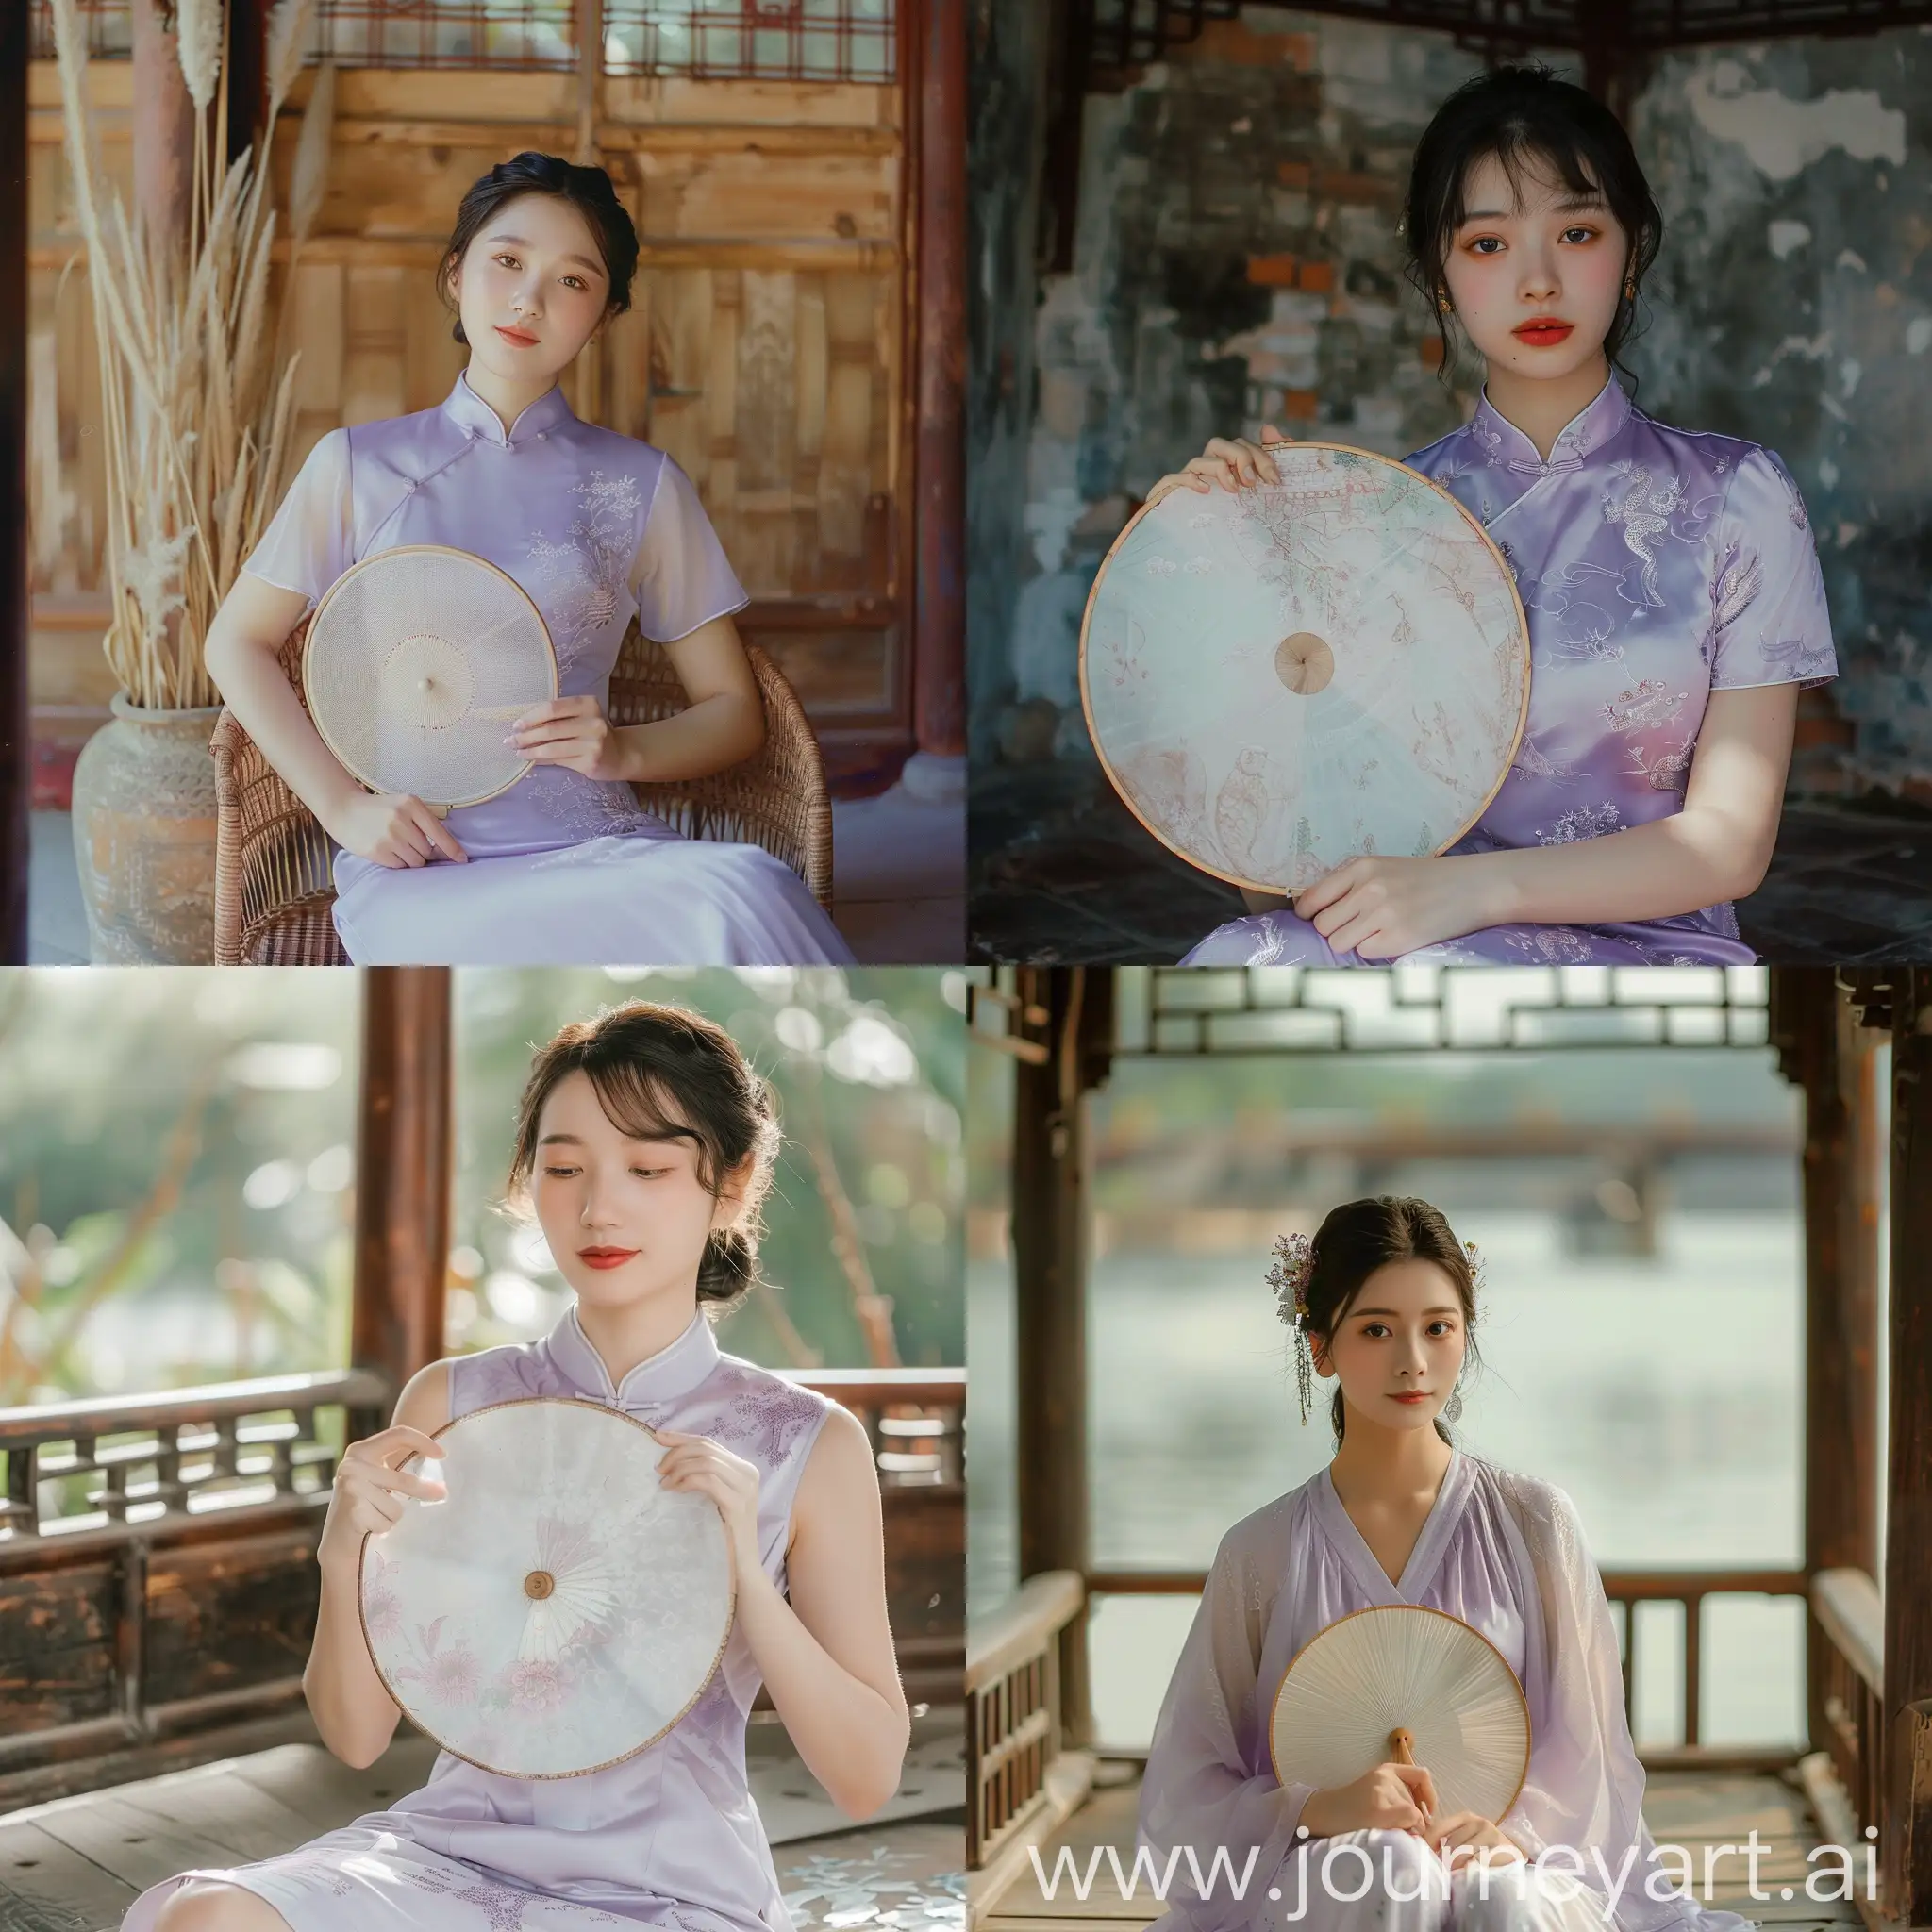 一位身着淡紫色旗袍的江南水乡的女子，坐在庭阁中，手持圆扇。脸上慵懒妩媚

